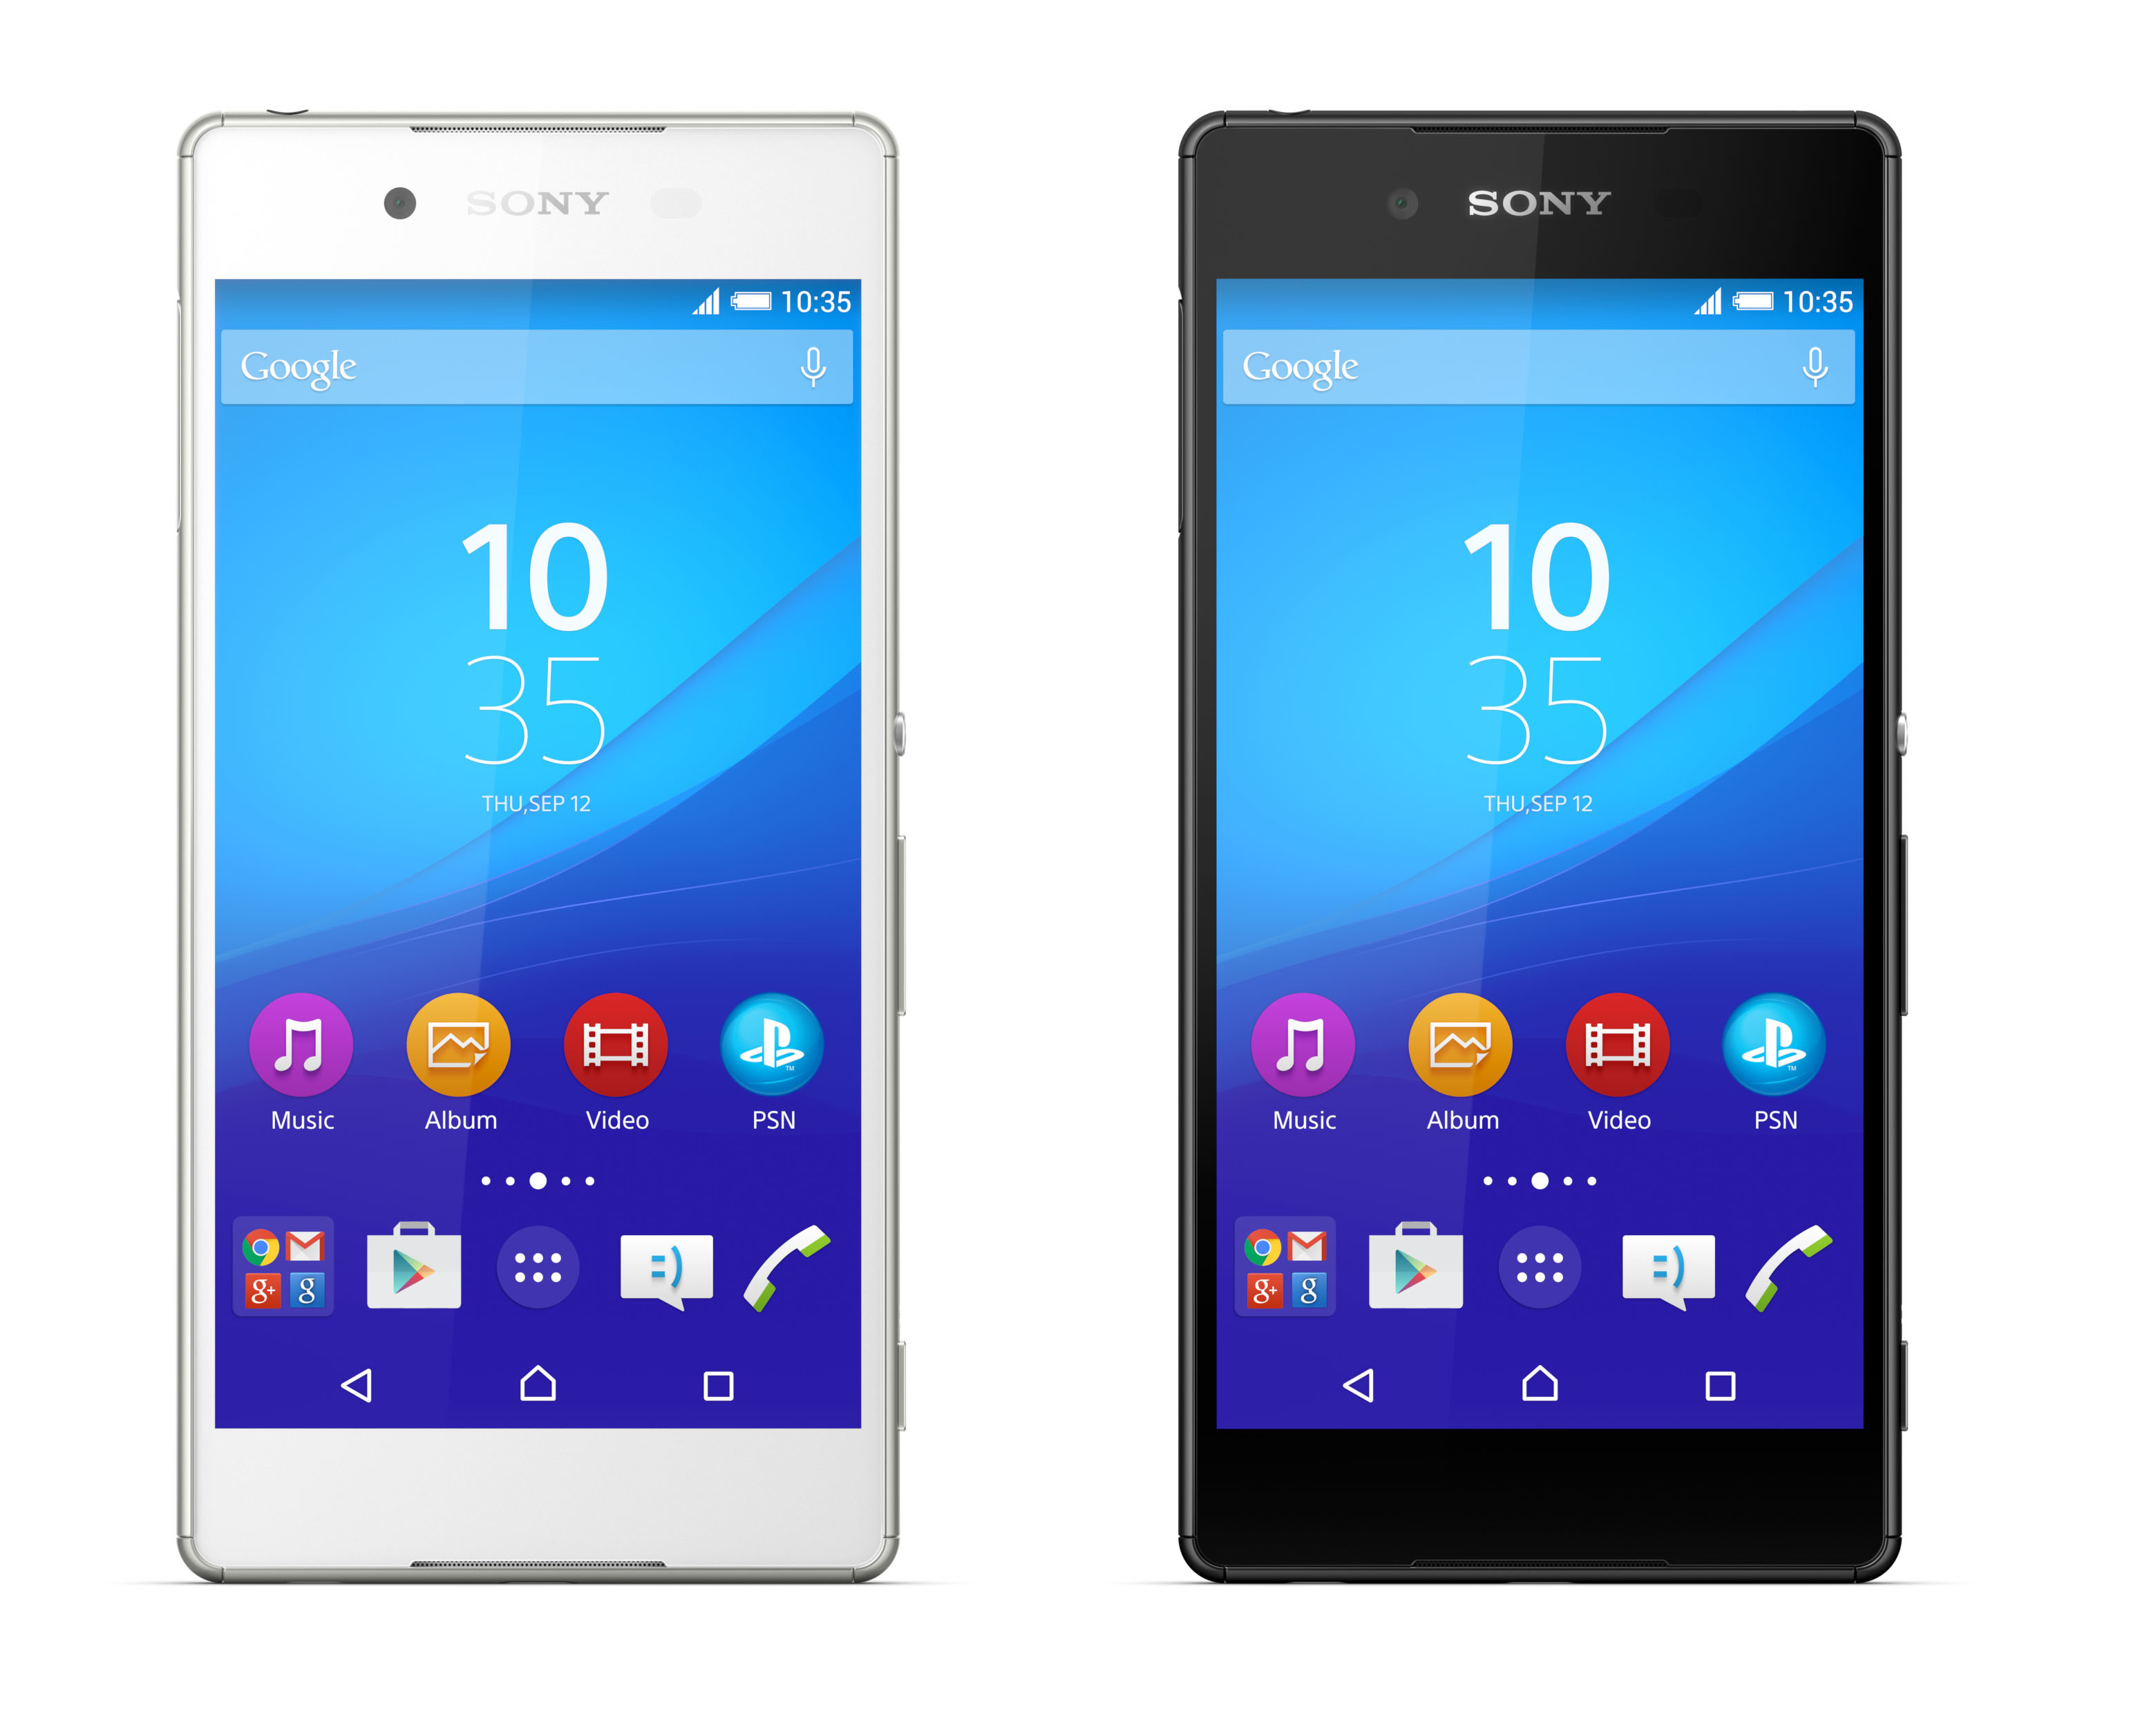 Immagine pubblicata in relazione al seguente contenuto: Sony annuncia lo smartphone high-end Xperia Z4 con Android 5.0 | Nome immagine: news22496_Sony-Xperia-Z4_1.jpg